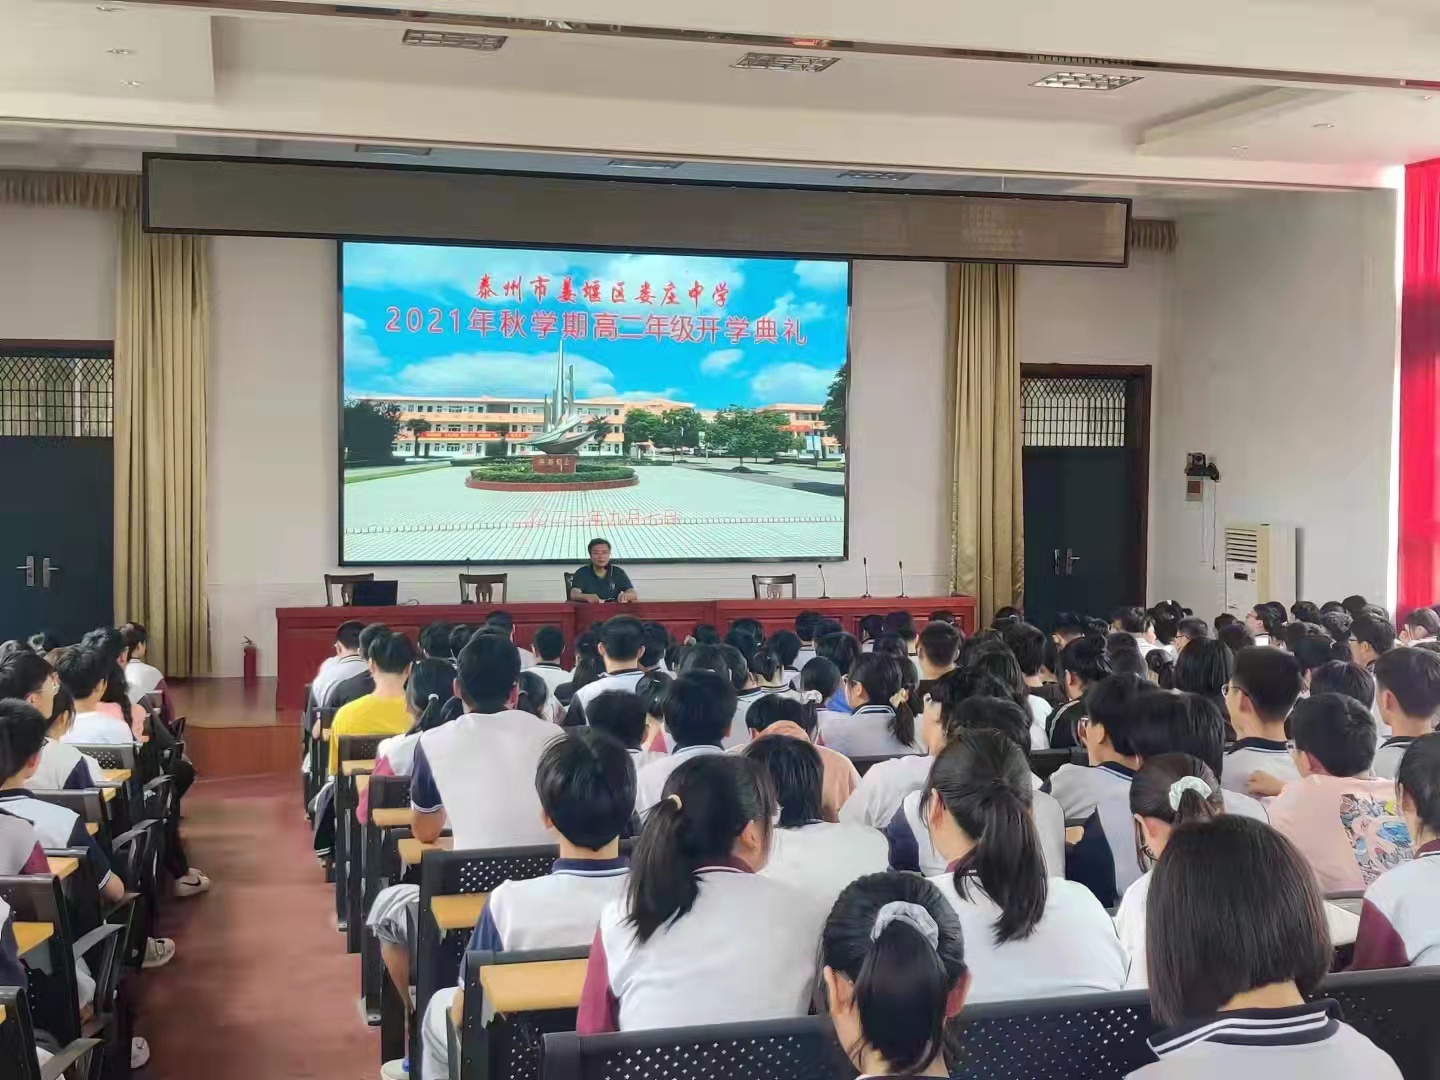 娄庄中学2021图片